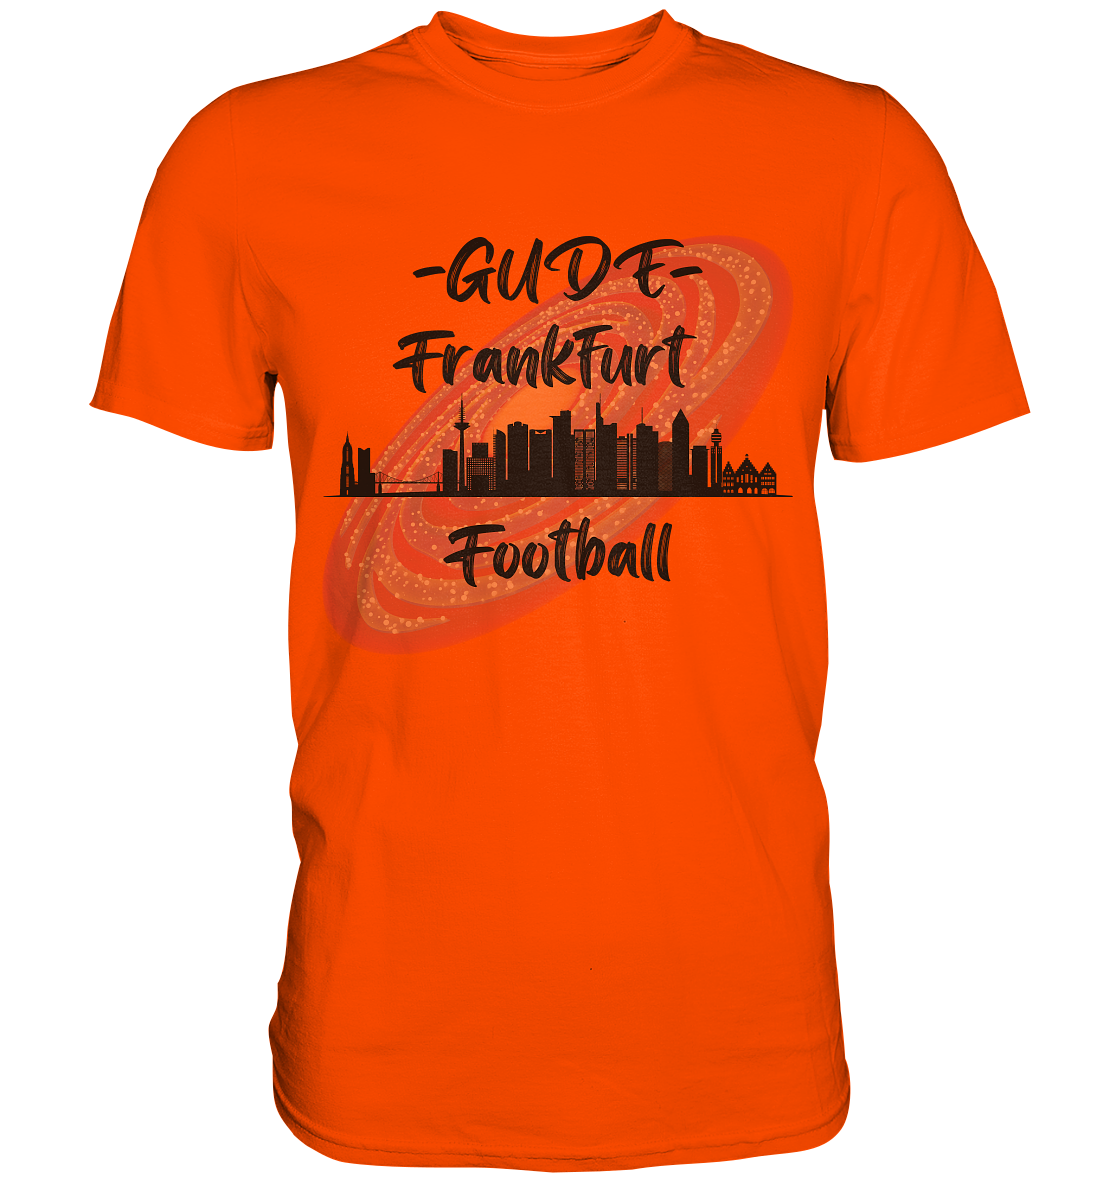 Gude Frankfurt Football (schwarze Schrift) - Premium Shirt - Football Unity Football Unity